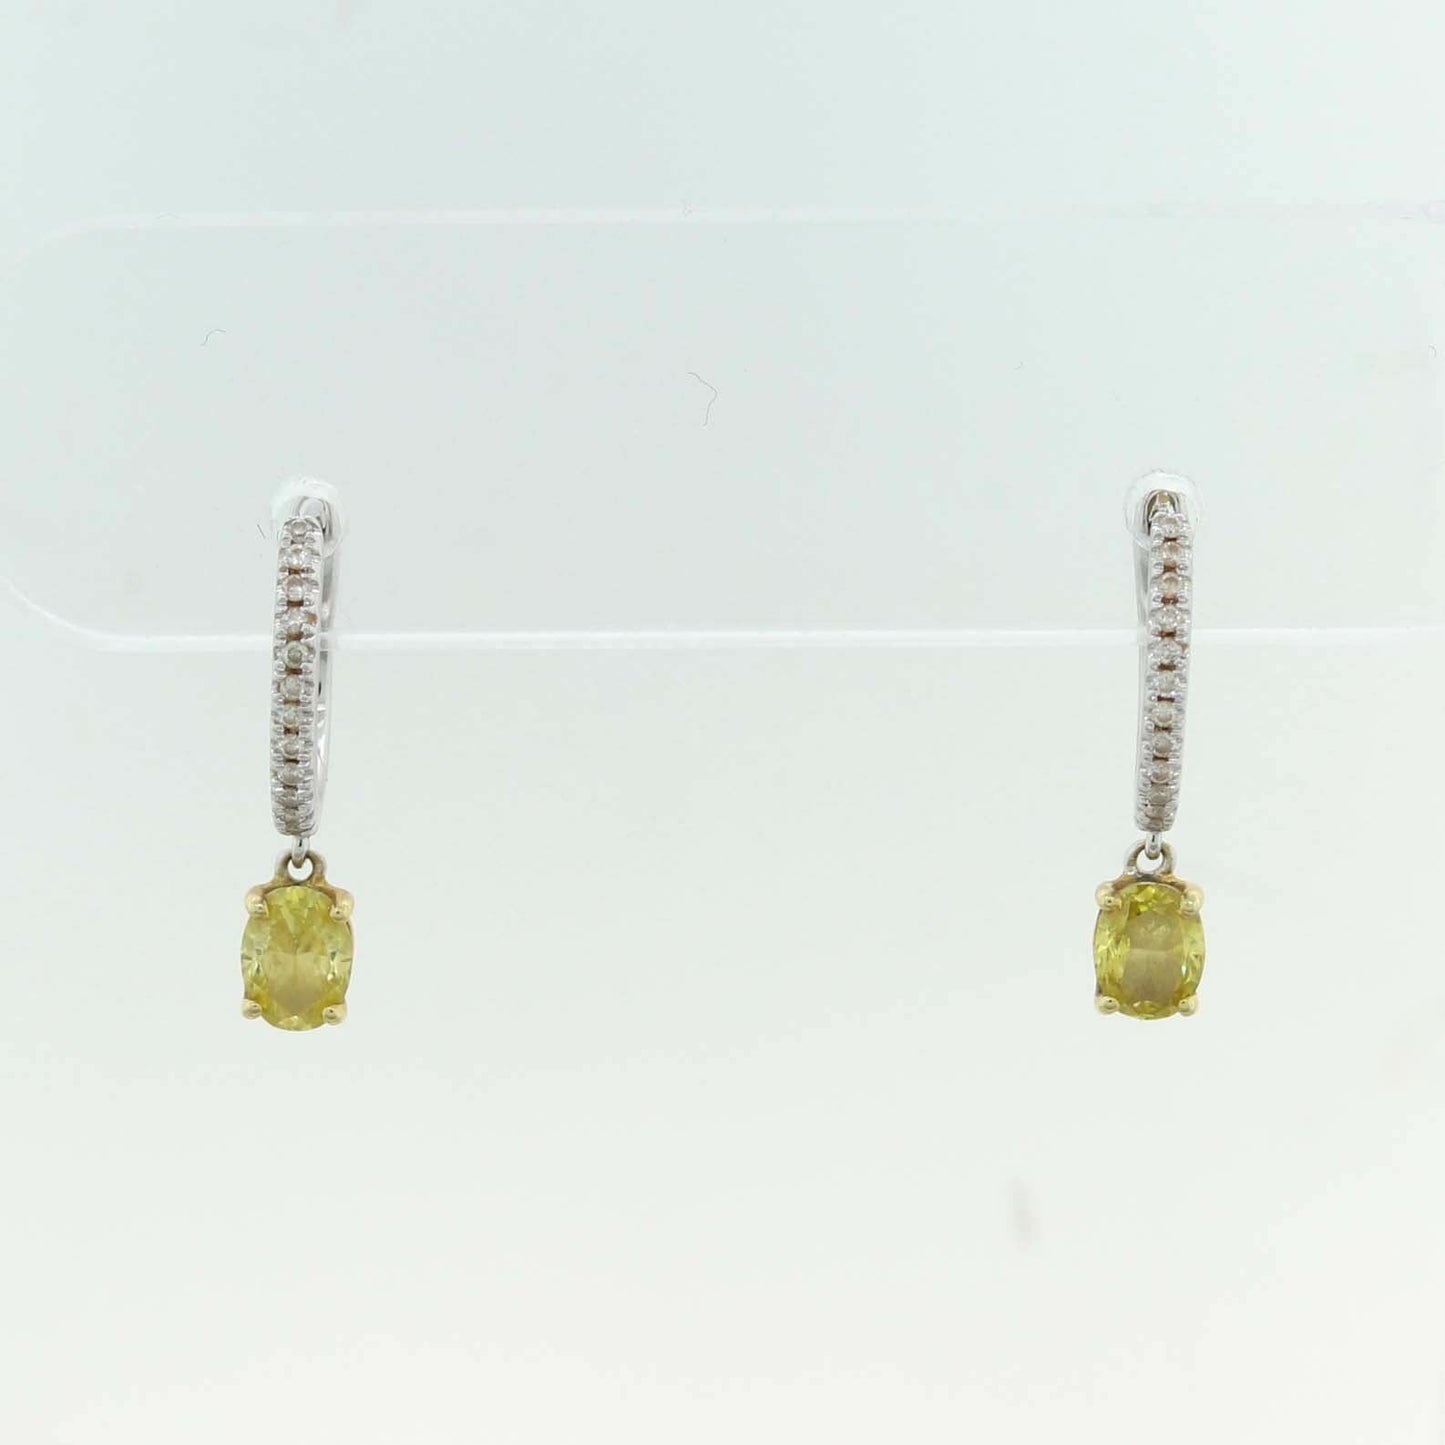 Oval Cut Fancy Yellow 1.05ctw Diamond 18k White Gold Earrings